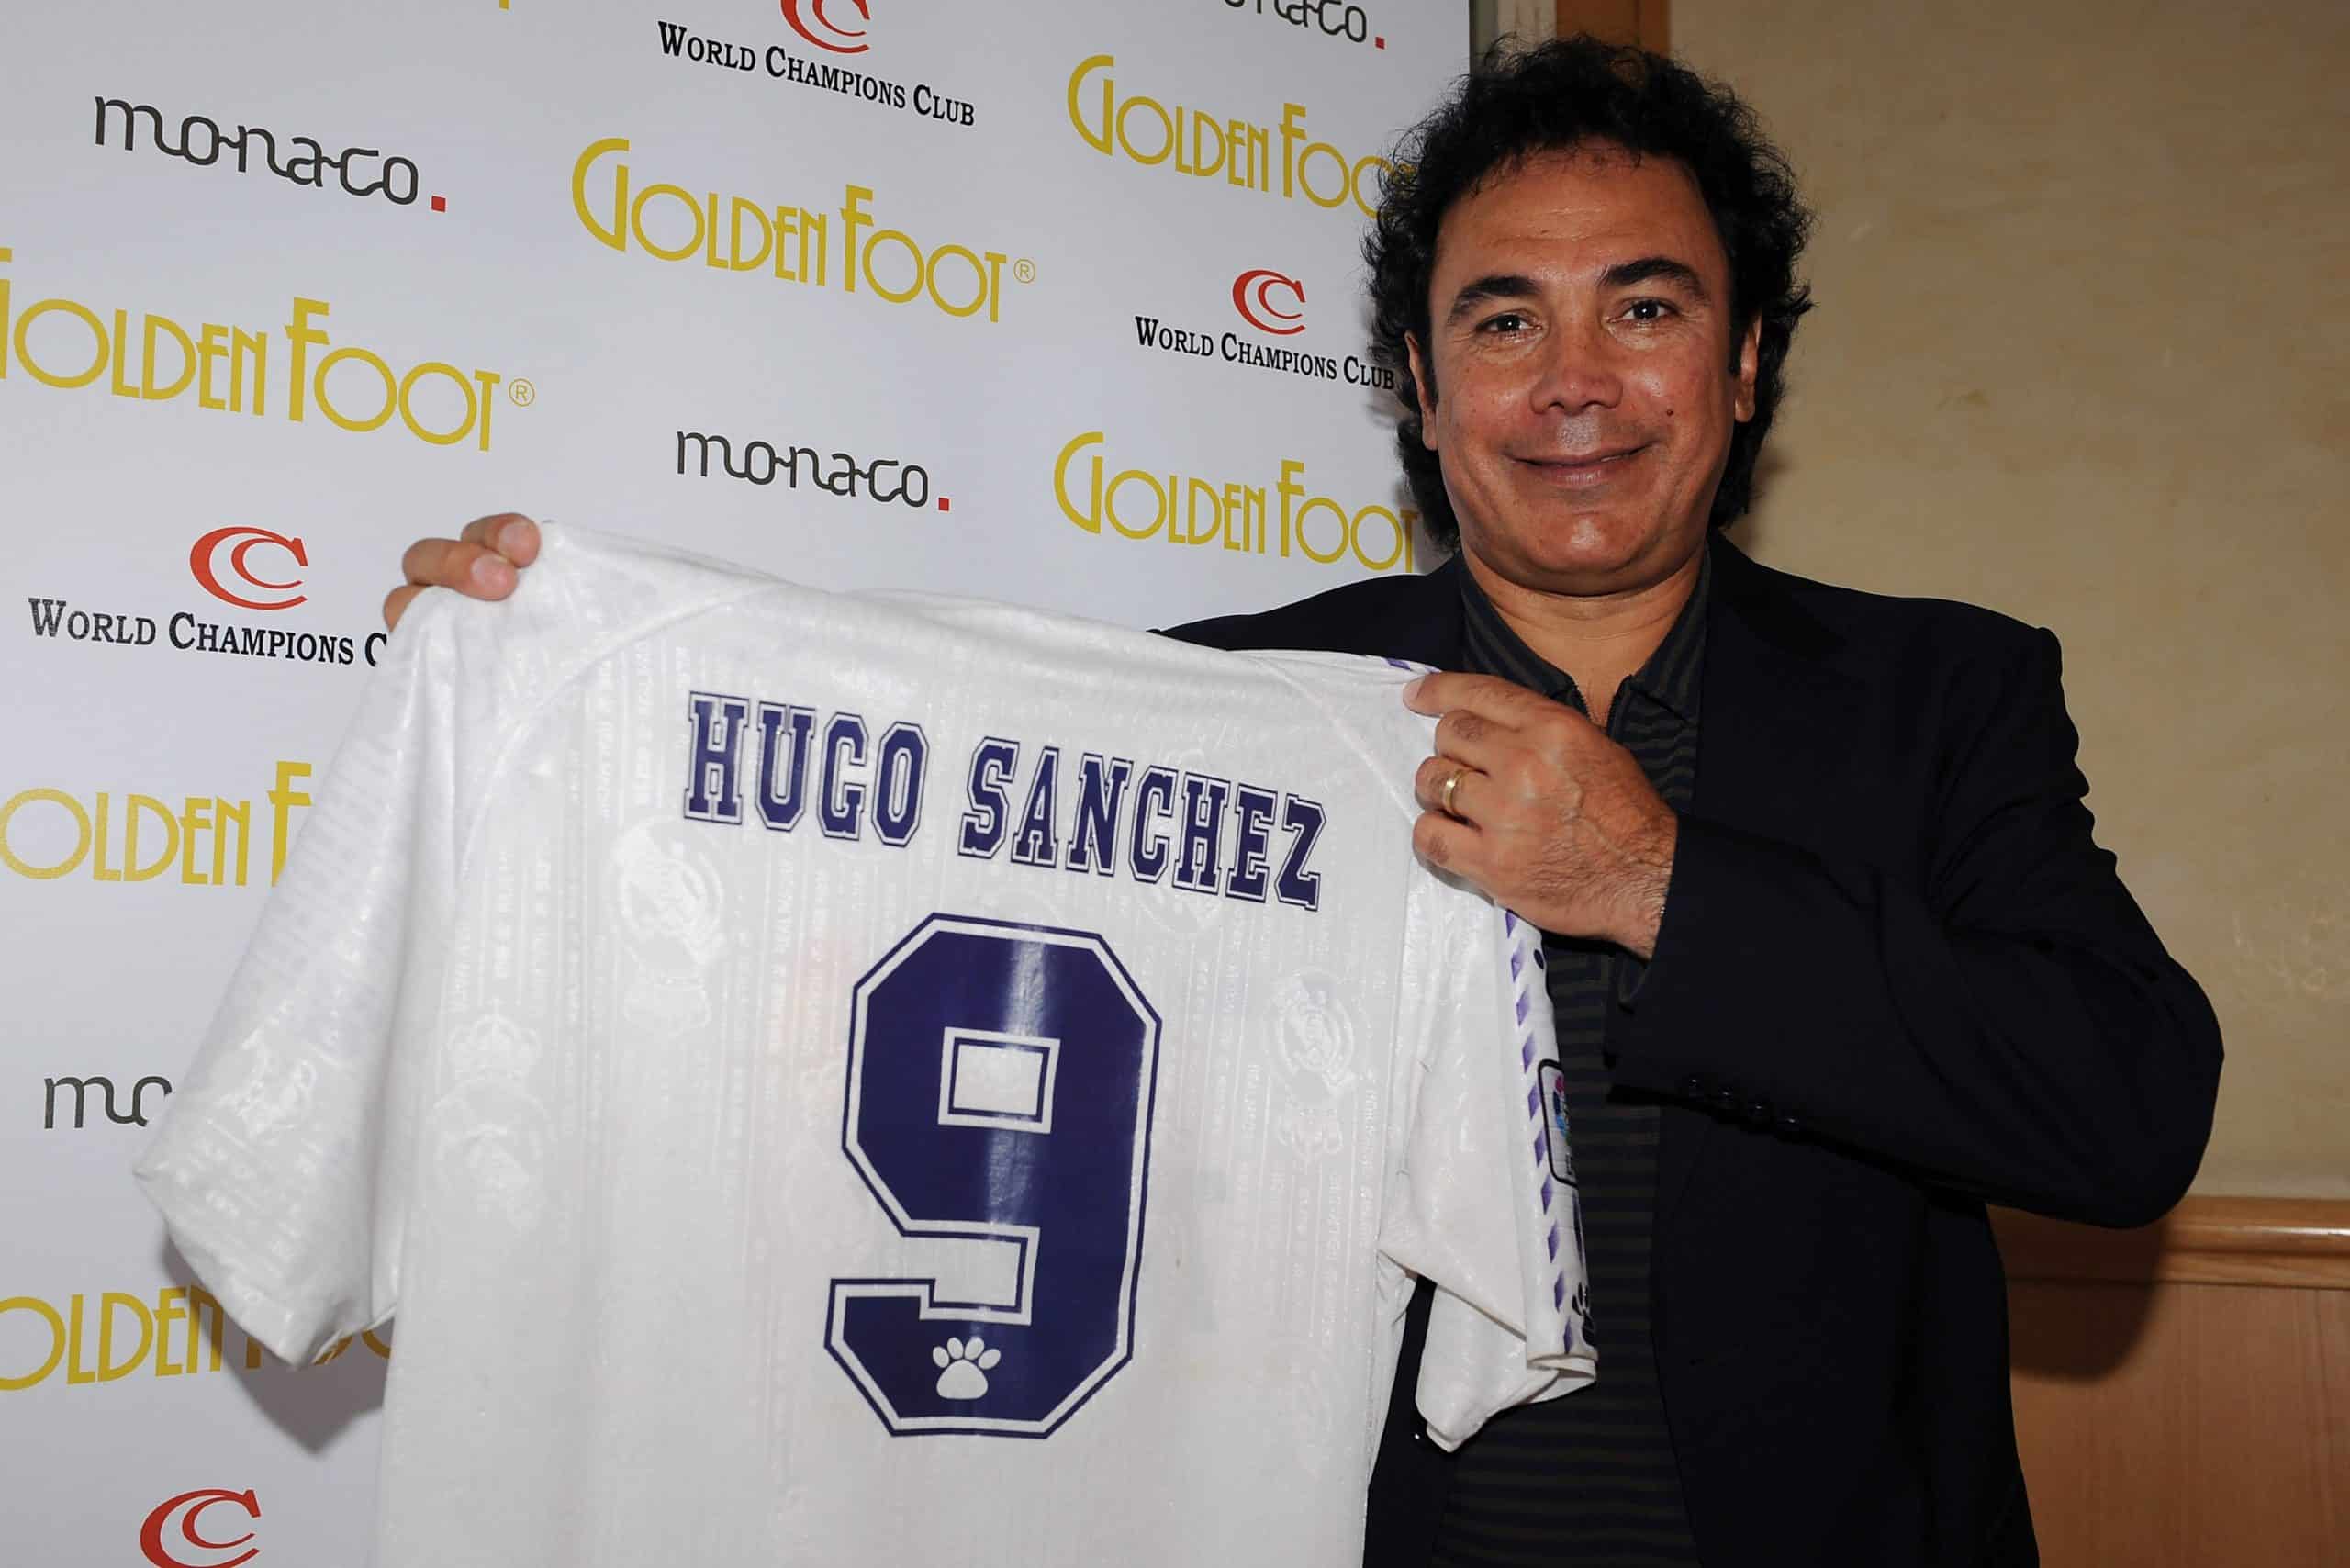 Hugo Sánchez es elegido como 14° mejor jugador en la historia del Real Madrid